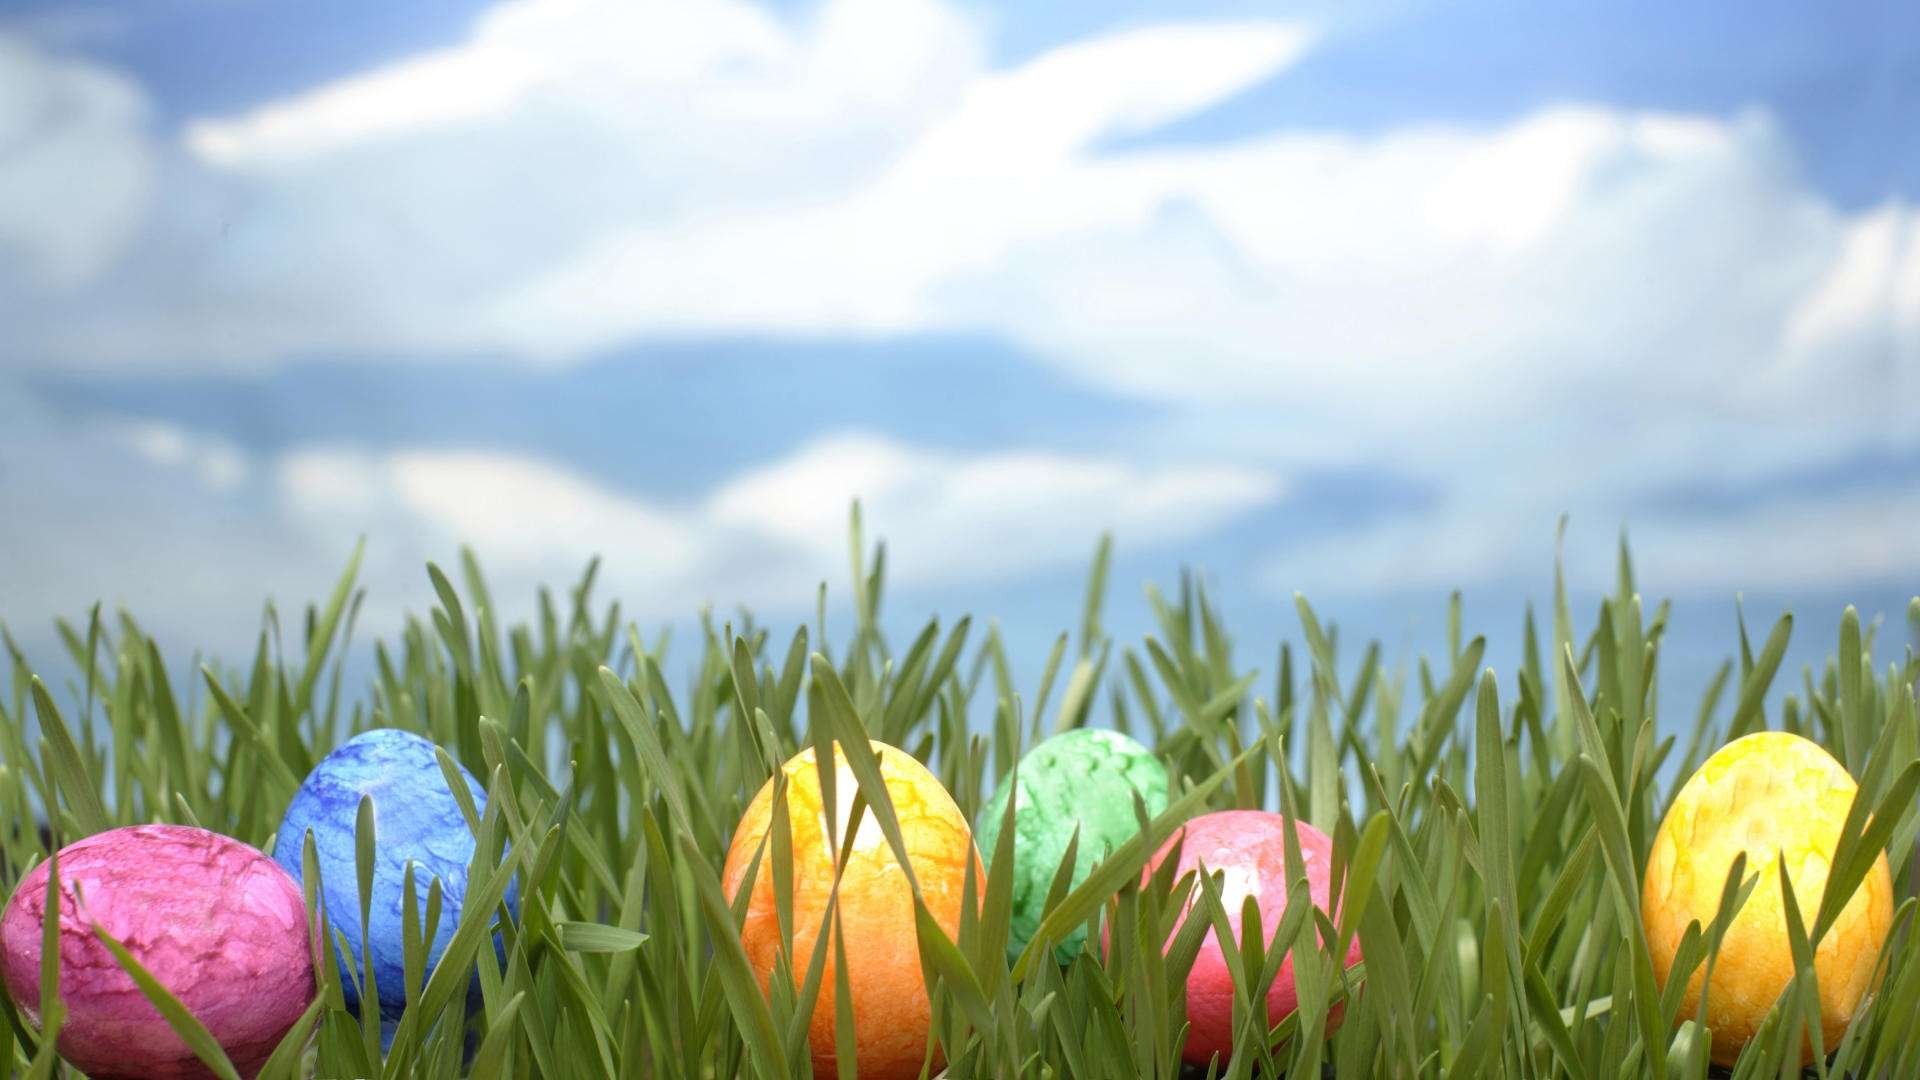 Wallpaper For > Easter Egg Background